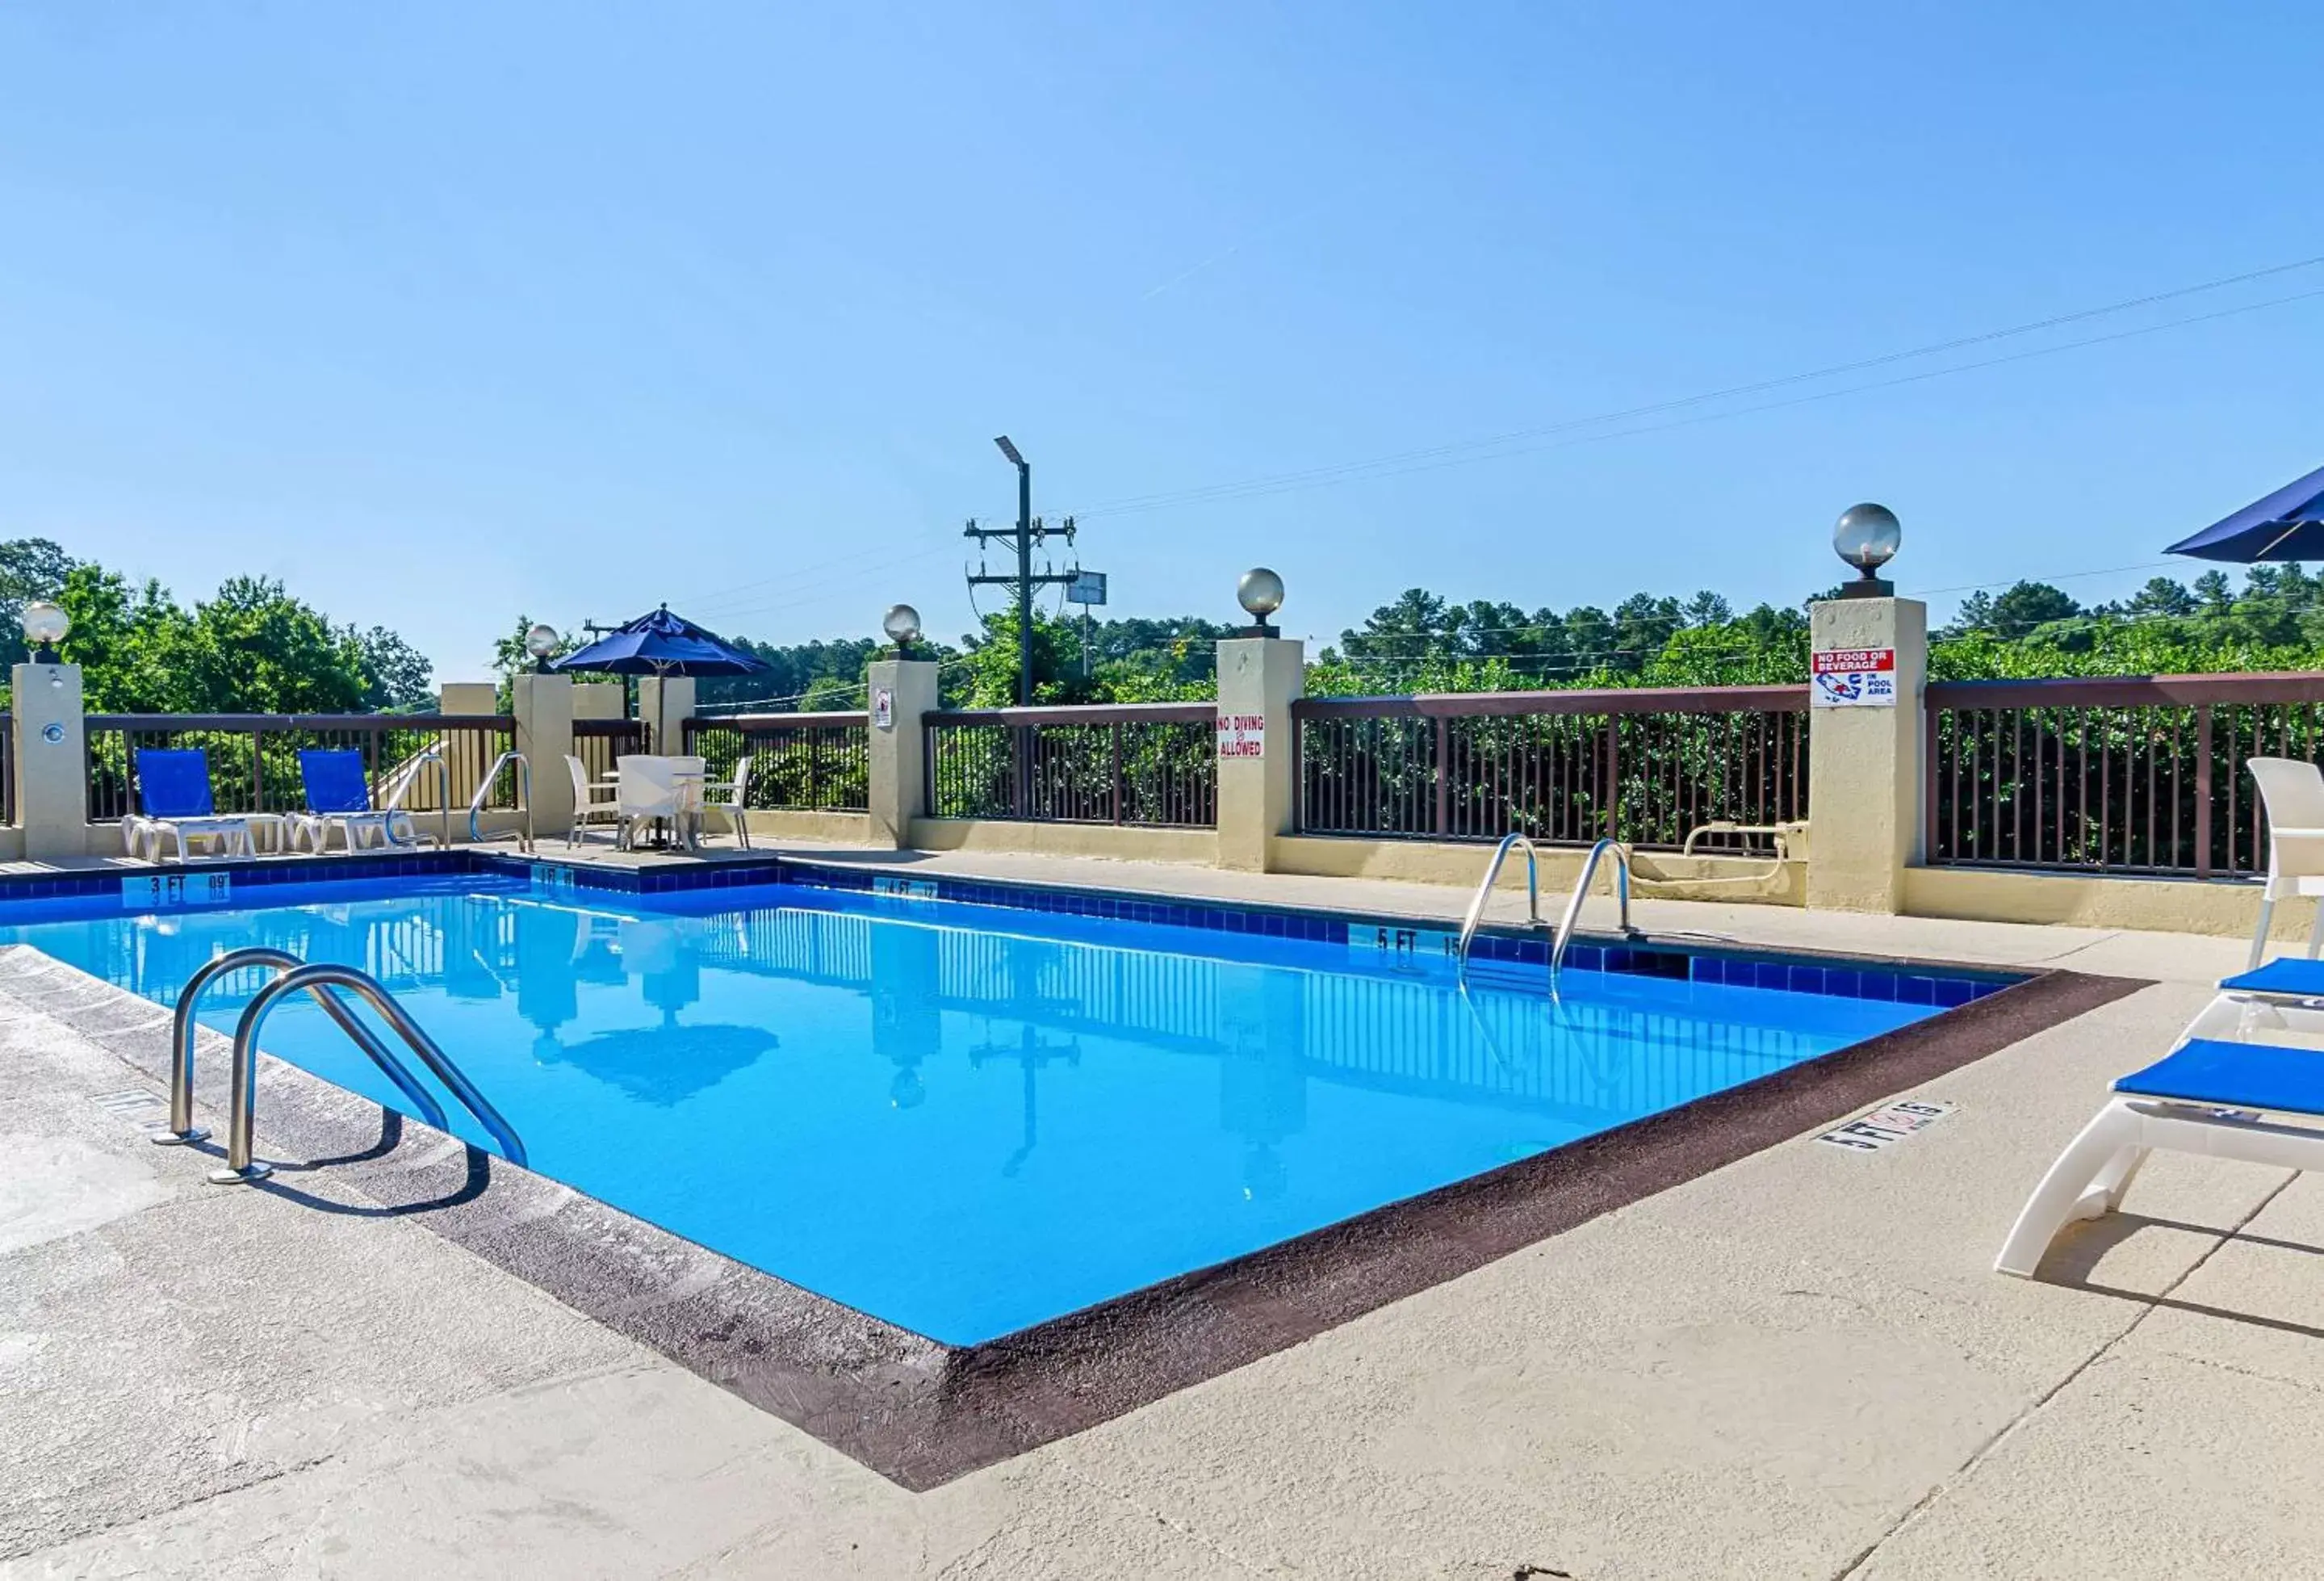 On site, Swimming Pool in Comfort Inn & Suites Durham near Duke University